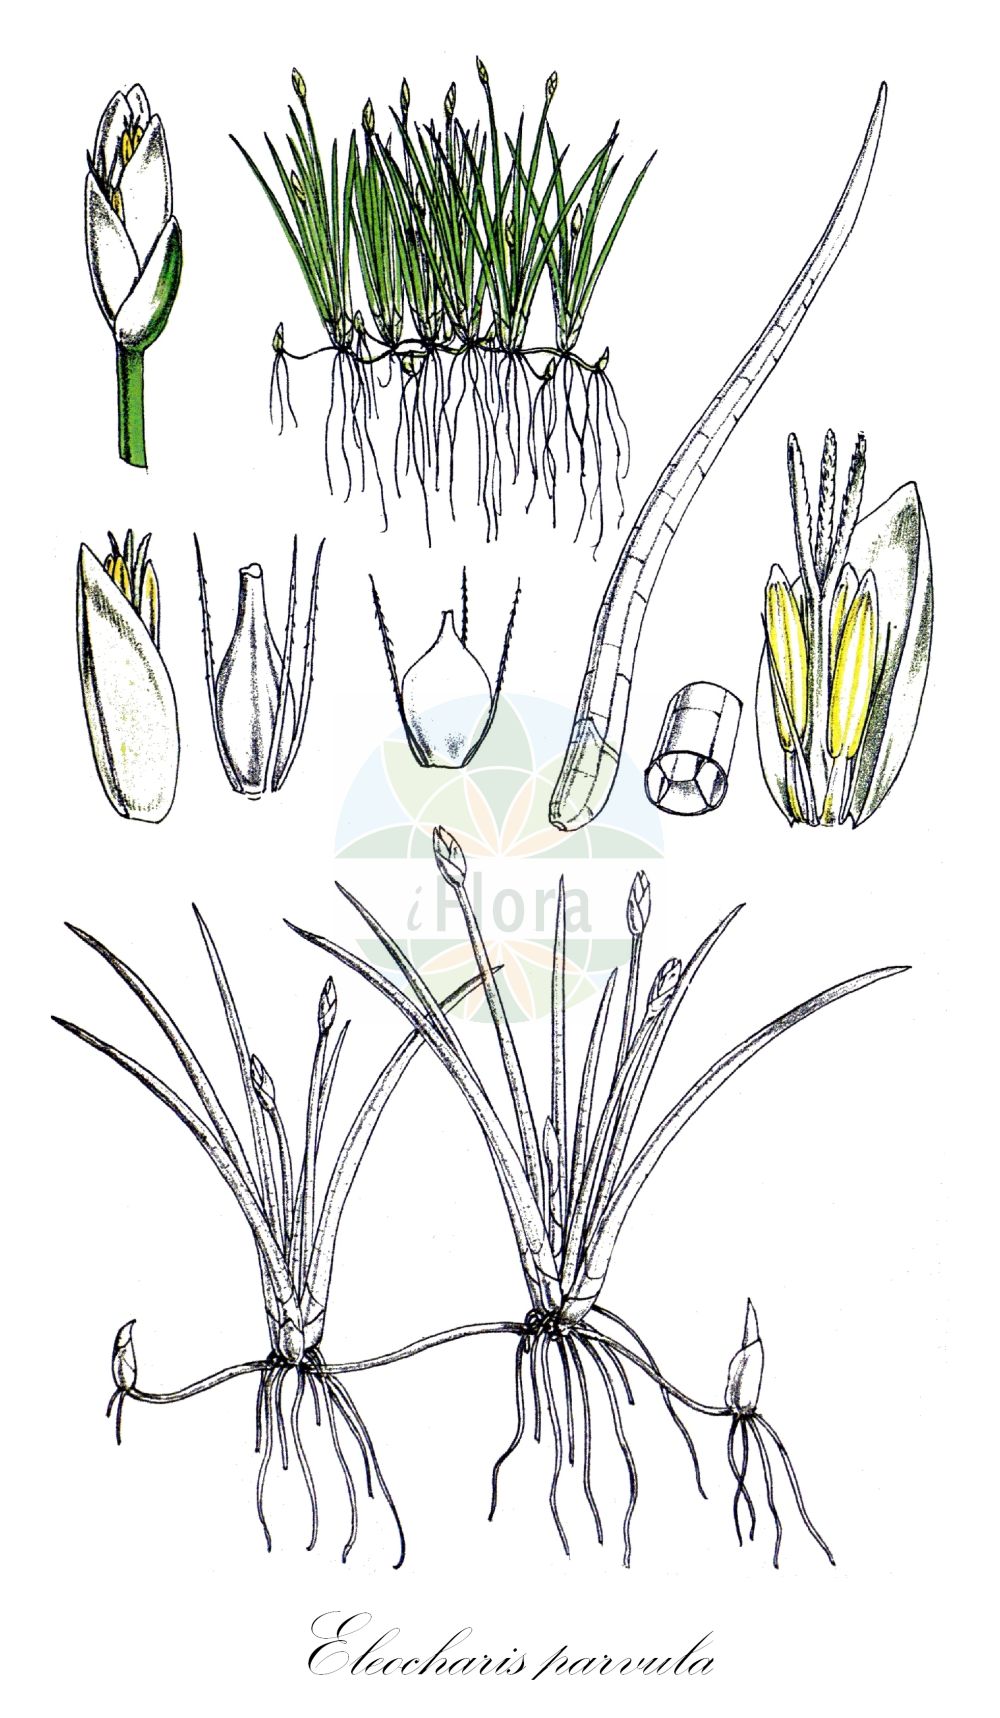 Historische Abbildung von Eleocharis parvula (Zwerg-Sumpfbinse - Dwarf Spike-rush). Das Bild zeigt Blatt, Bluete, Frucht und Same. ---- Historical Drawing of Eleocharis parvula (Zwerg-Sumpfbinse - Dwarf Spike-rush). The image is showing leaf, flower, fruit and seed.(Eleocharis parvula,Zwerg-Sumpfbinse,Dwarf Spike-rush,Eleocharis parvula,Eleocharis pygmaea,Scirpus parvulus,Zwerg-Sumpfbinse,Dwarf Spike-rush,Dwarf Spikesedge,Barbed Spikerush,Colorado Spikerush,Hairgrass,Eleocharis,Sumpfbinse,Spikerush,Cyperaceae,Sauergräser,Sedge family,Blatt,Bluete,Frucht,Same,leaf,flower,fruit,seed,Fitch et al. (1880))